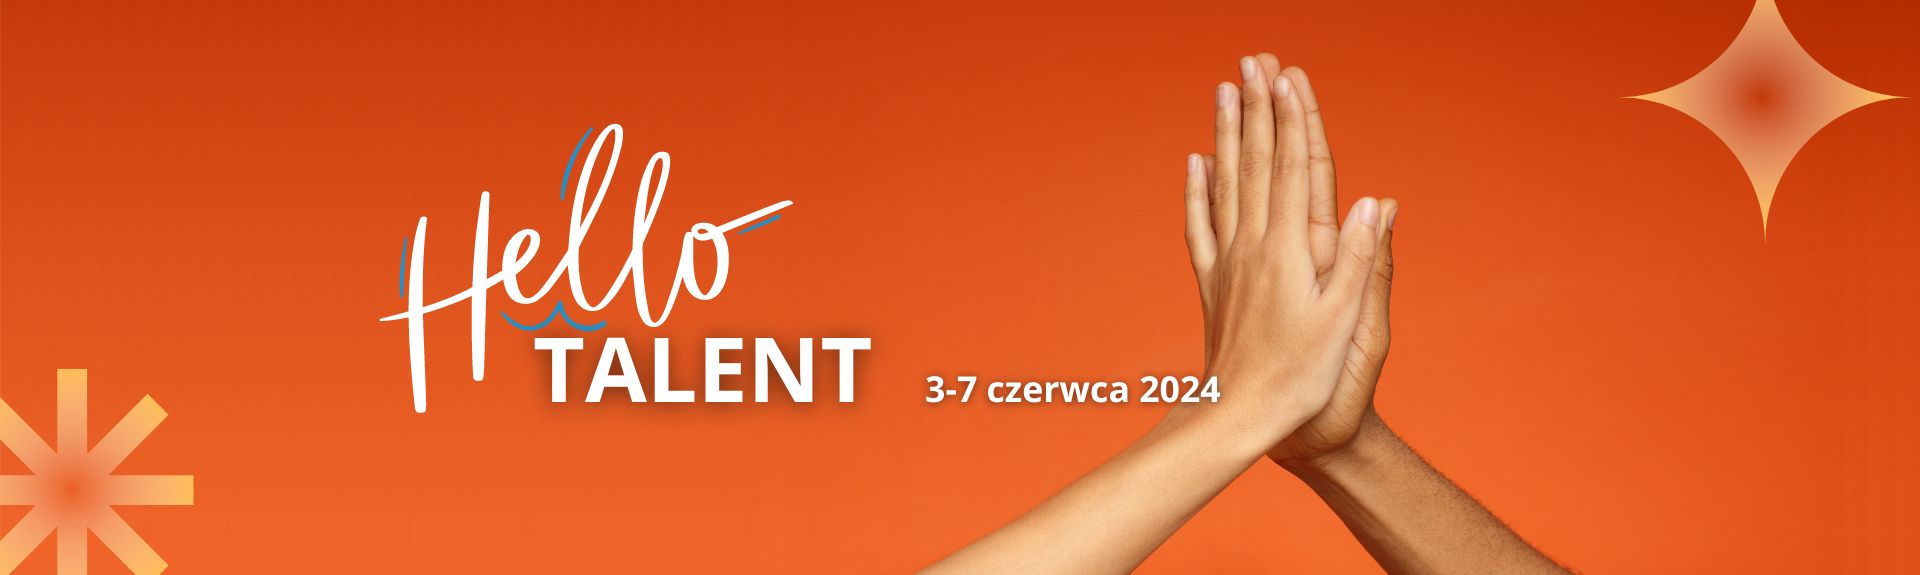 Tydzień Hello Talent 3-7 czerwca 2024